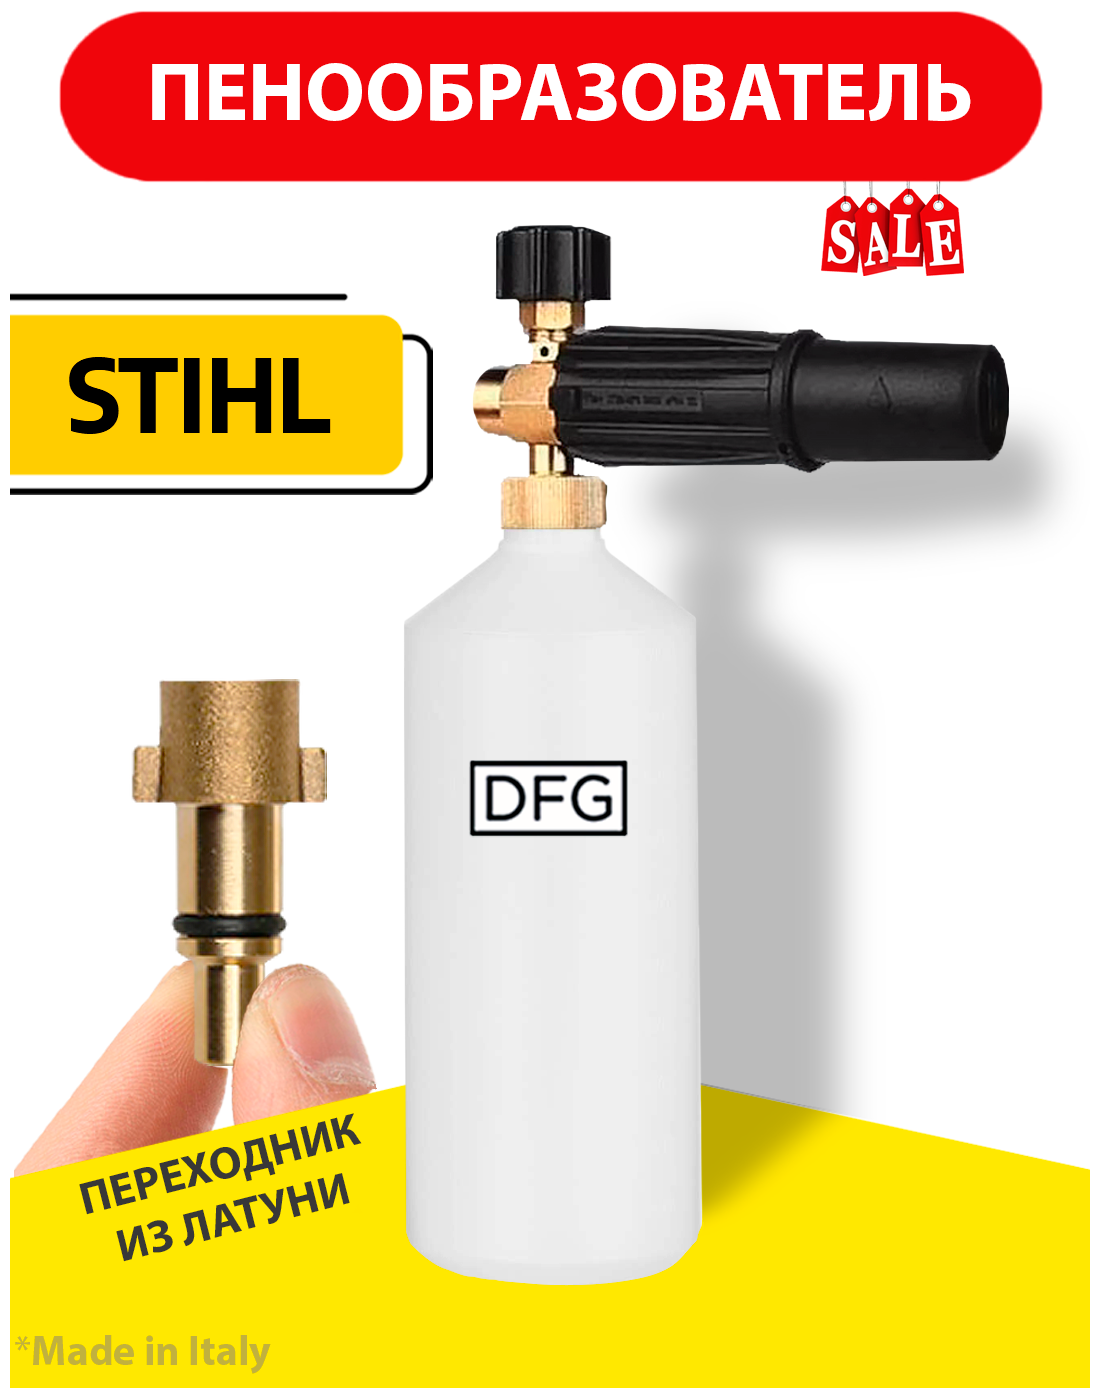 Пенная насадка LS 3 Premium для моек высокого давления Stihl(Штиль) Nilfisk с латунным переходником нового образца - фотография № 2